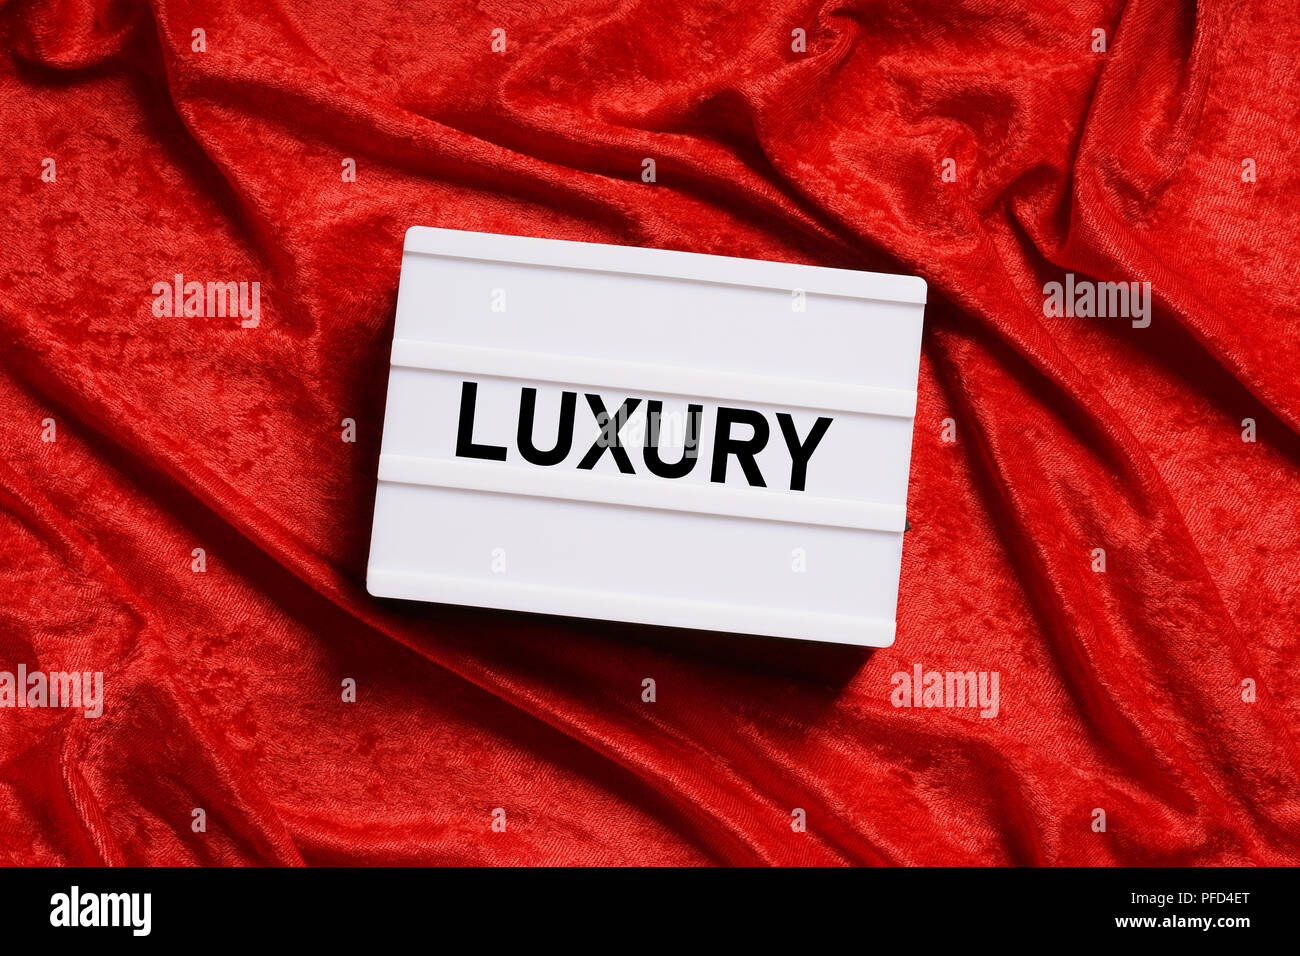 luxury text on lightbox or light box sign on red velvet background Stock Photo